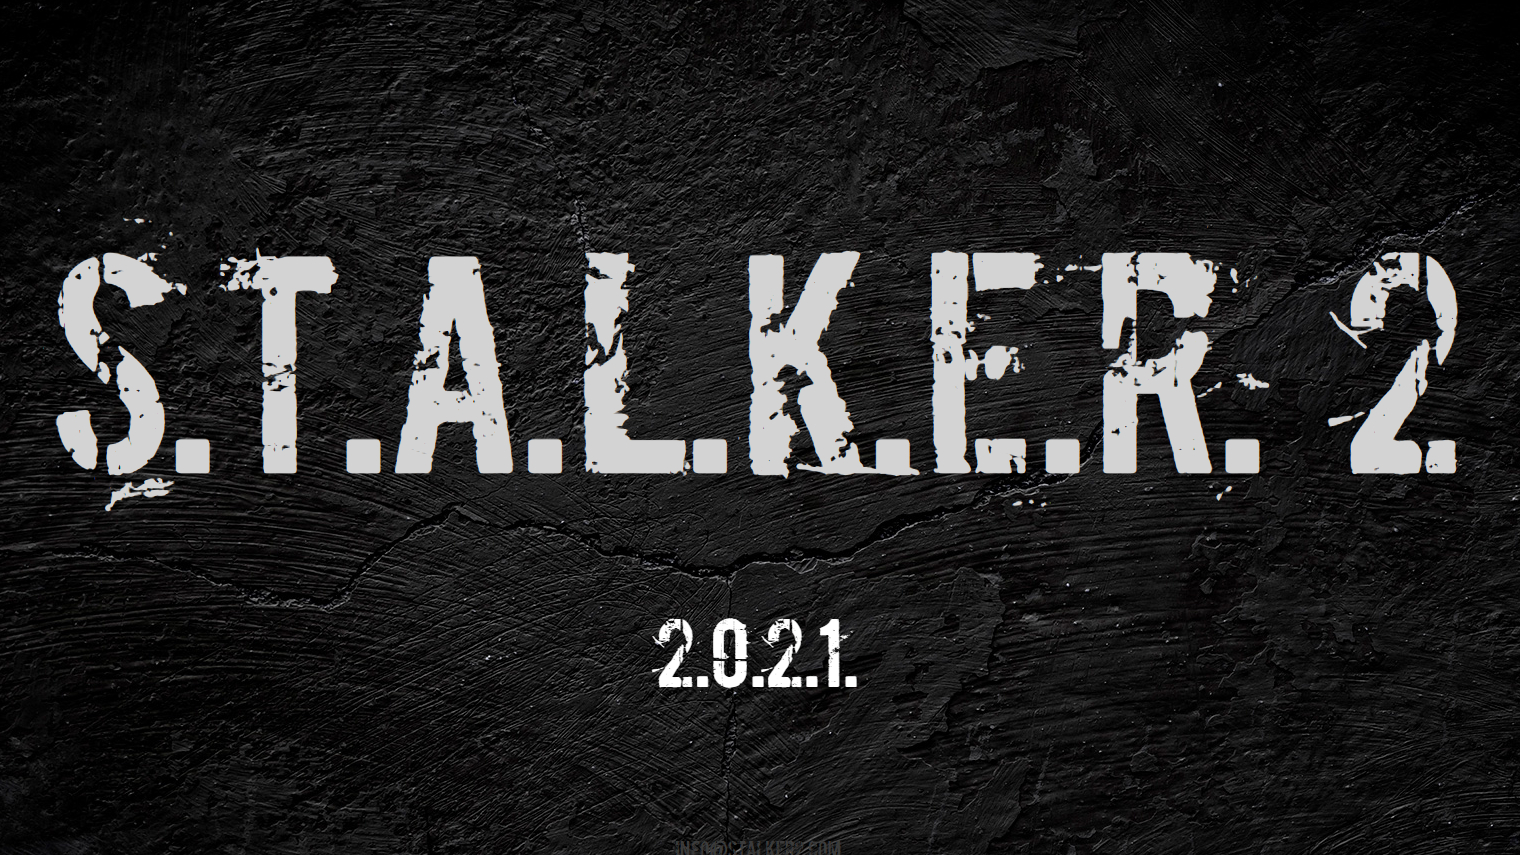 Stalker 2 Gets 2021 Release Date, a New Website